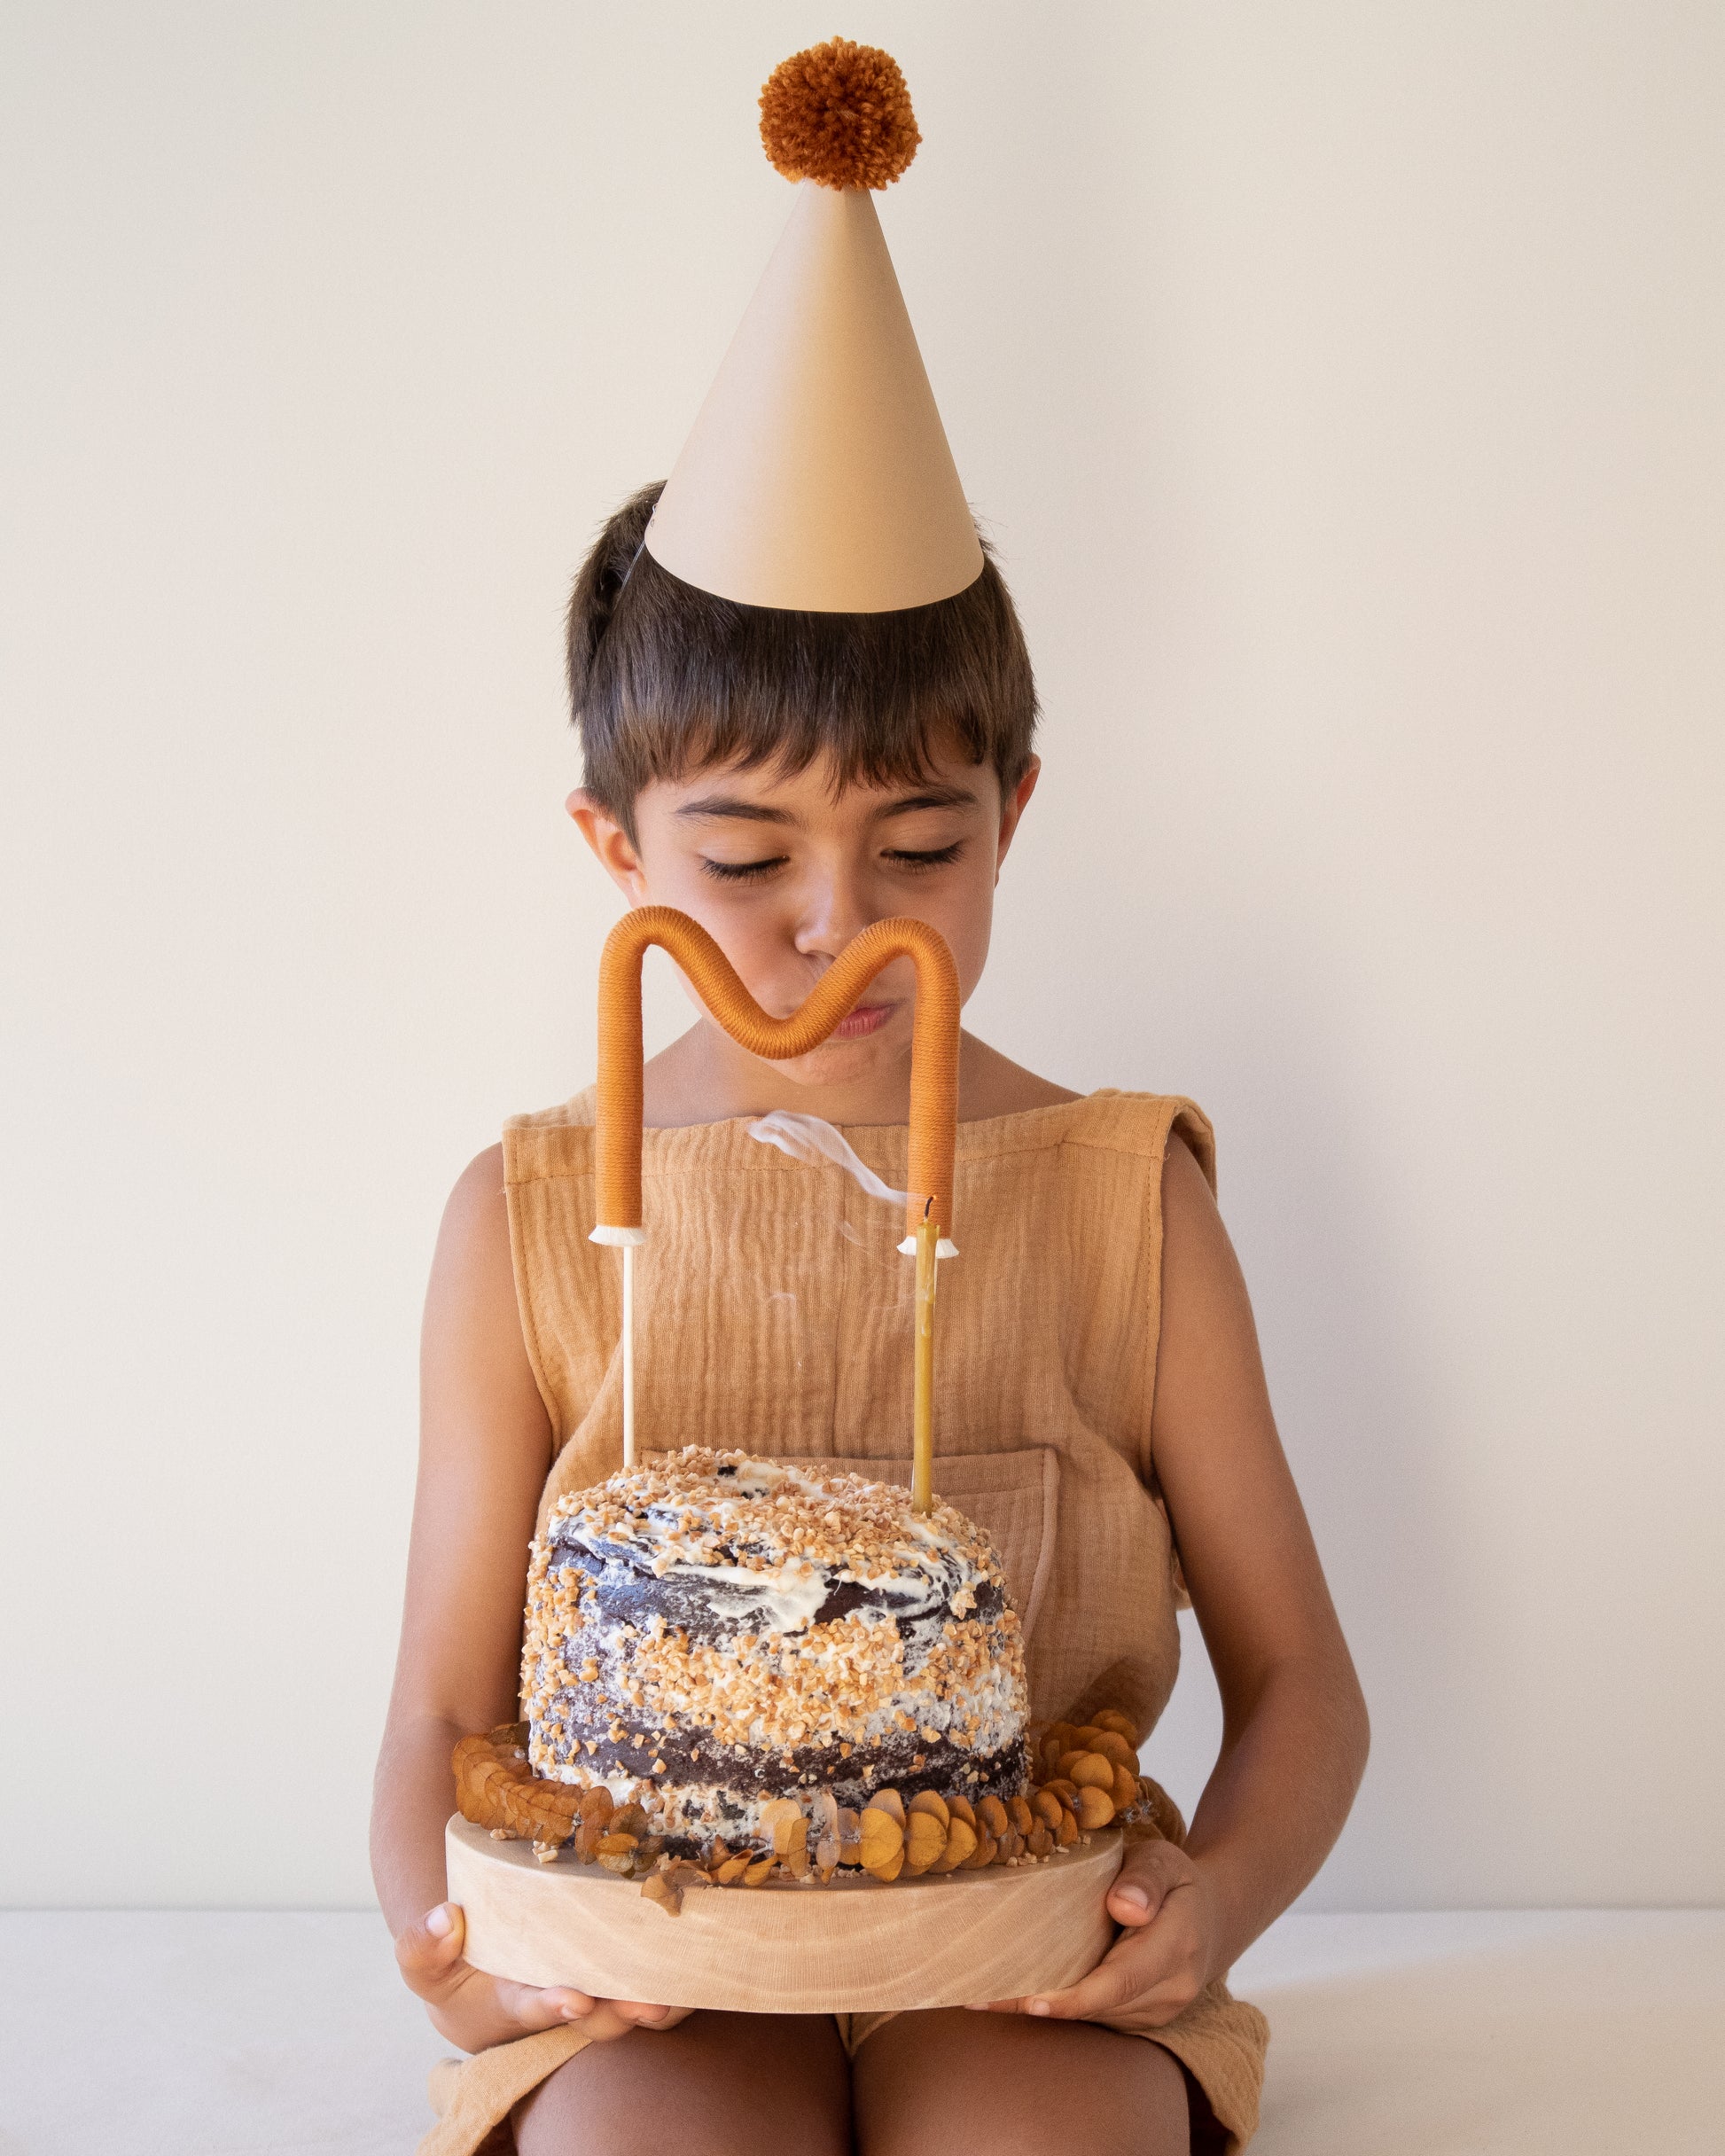 festa de criança – festa de bebé – aniversário – decoração festa – artigos para decoração festa infatil – toppers de bolo – topo de bolo – feito à mão